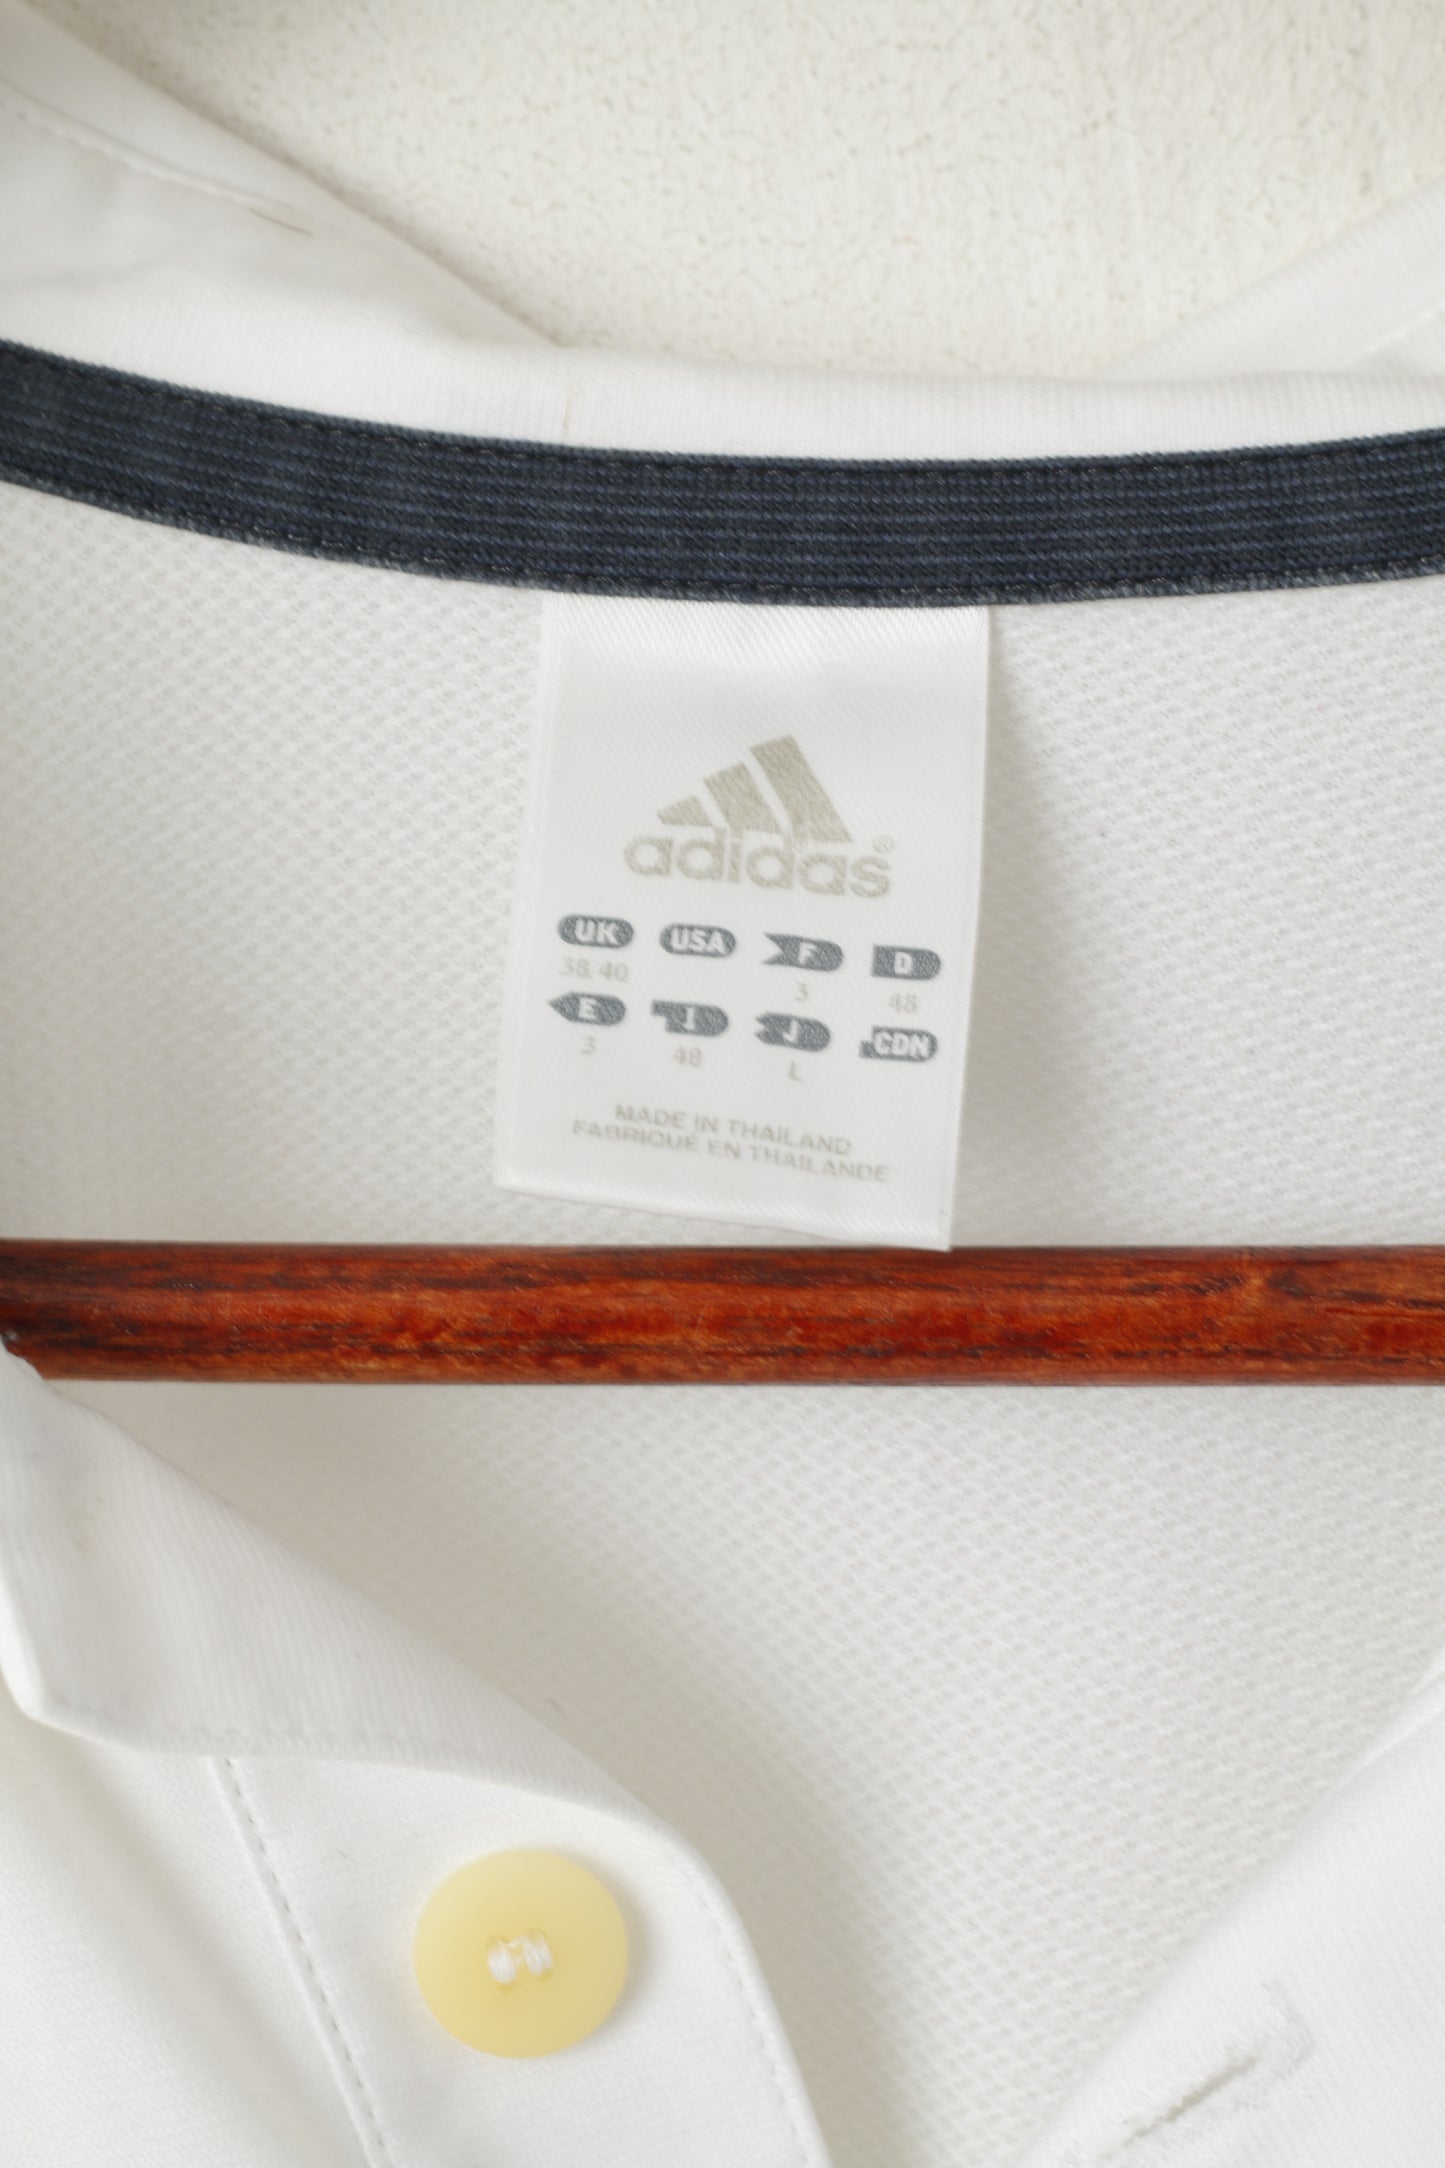 Polo Adidas da uomo L bianca da allenamento Activewear Vintage Sport Jersey Top